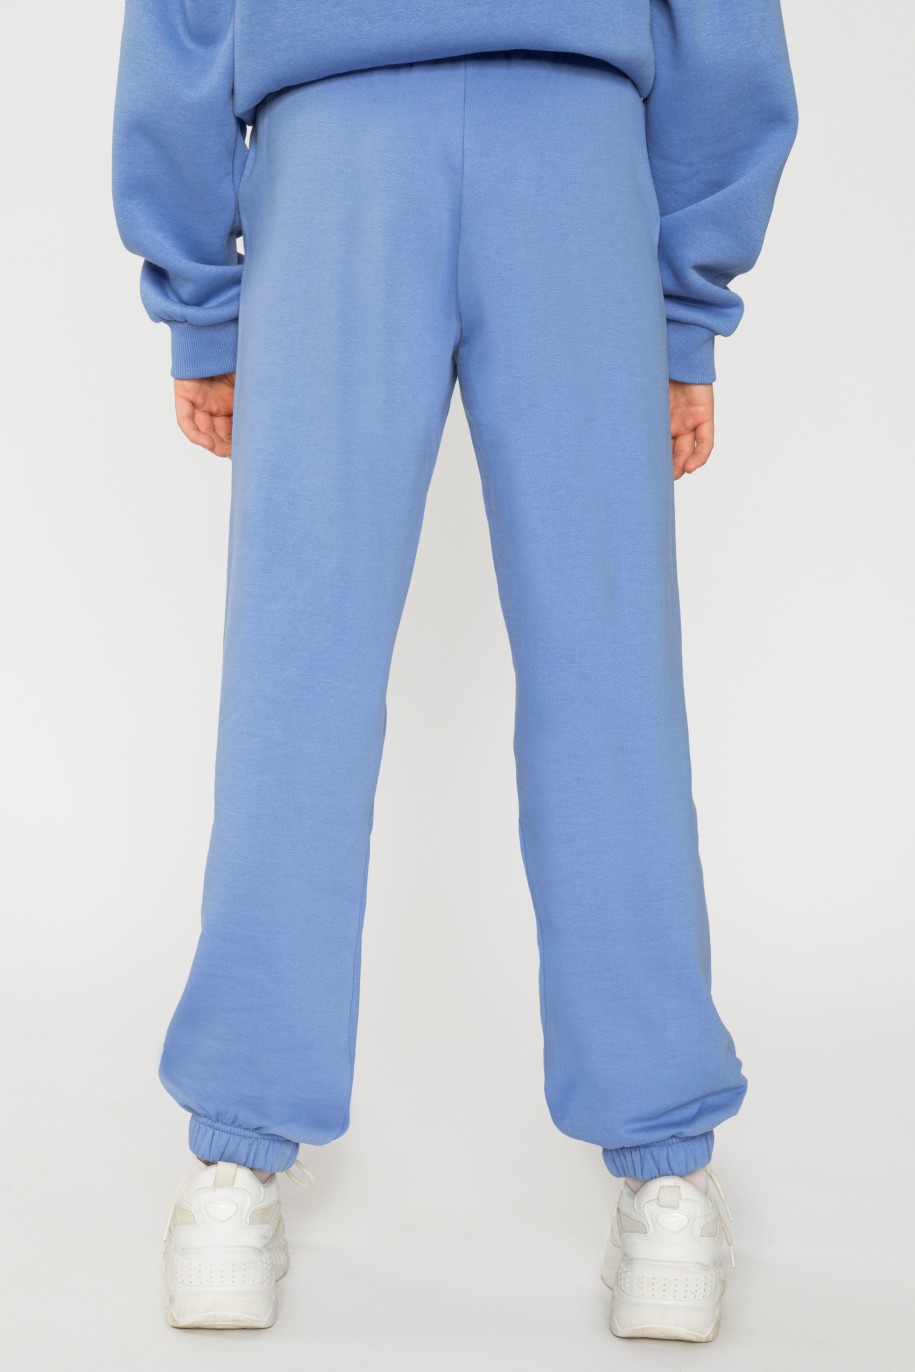 Niebieskie spodnie dresowe dla dziewczyny ze ściągaczami - 31814